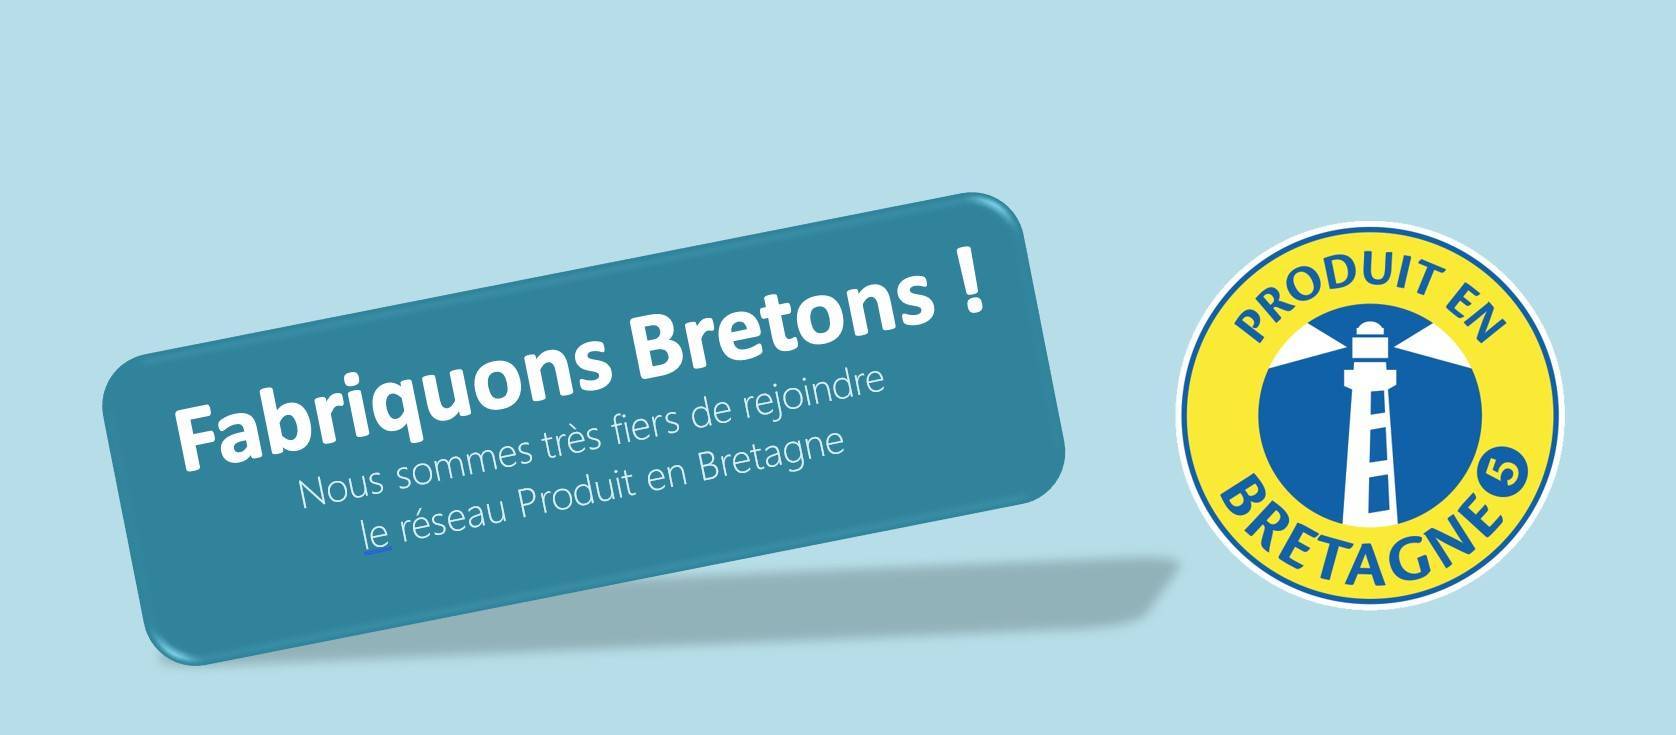 Logo Produit en Bretagne TY.ALU fabrication bretonne